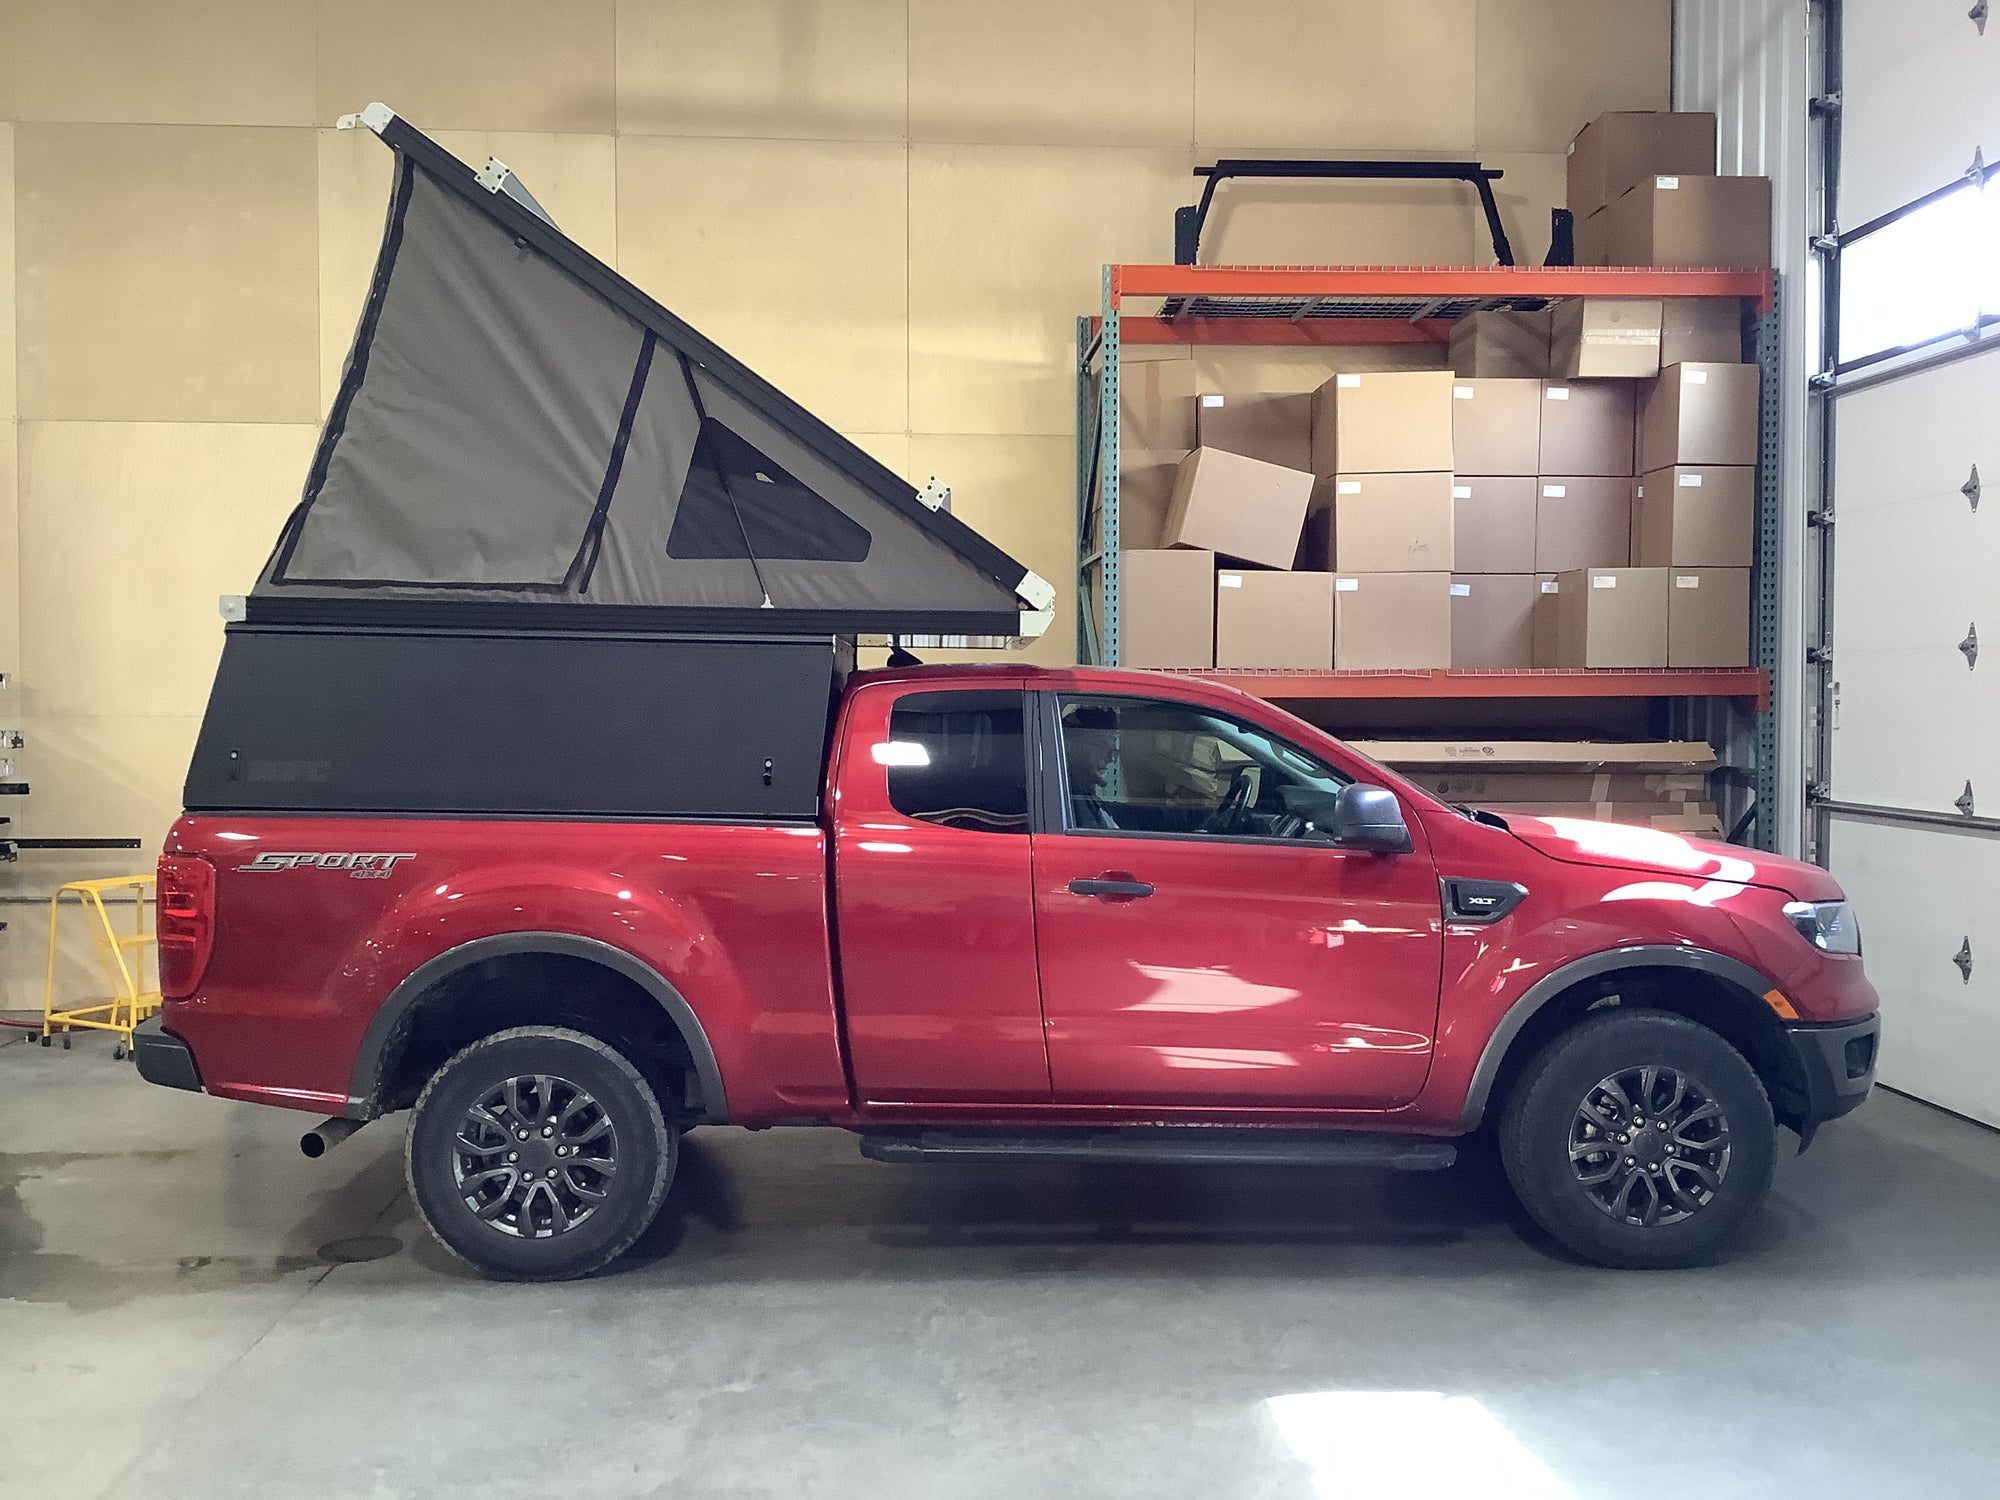 2020 Ford Ranger Camper - Build #3510